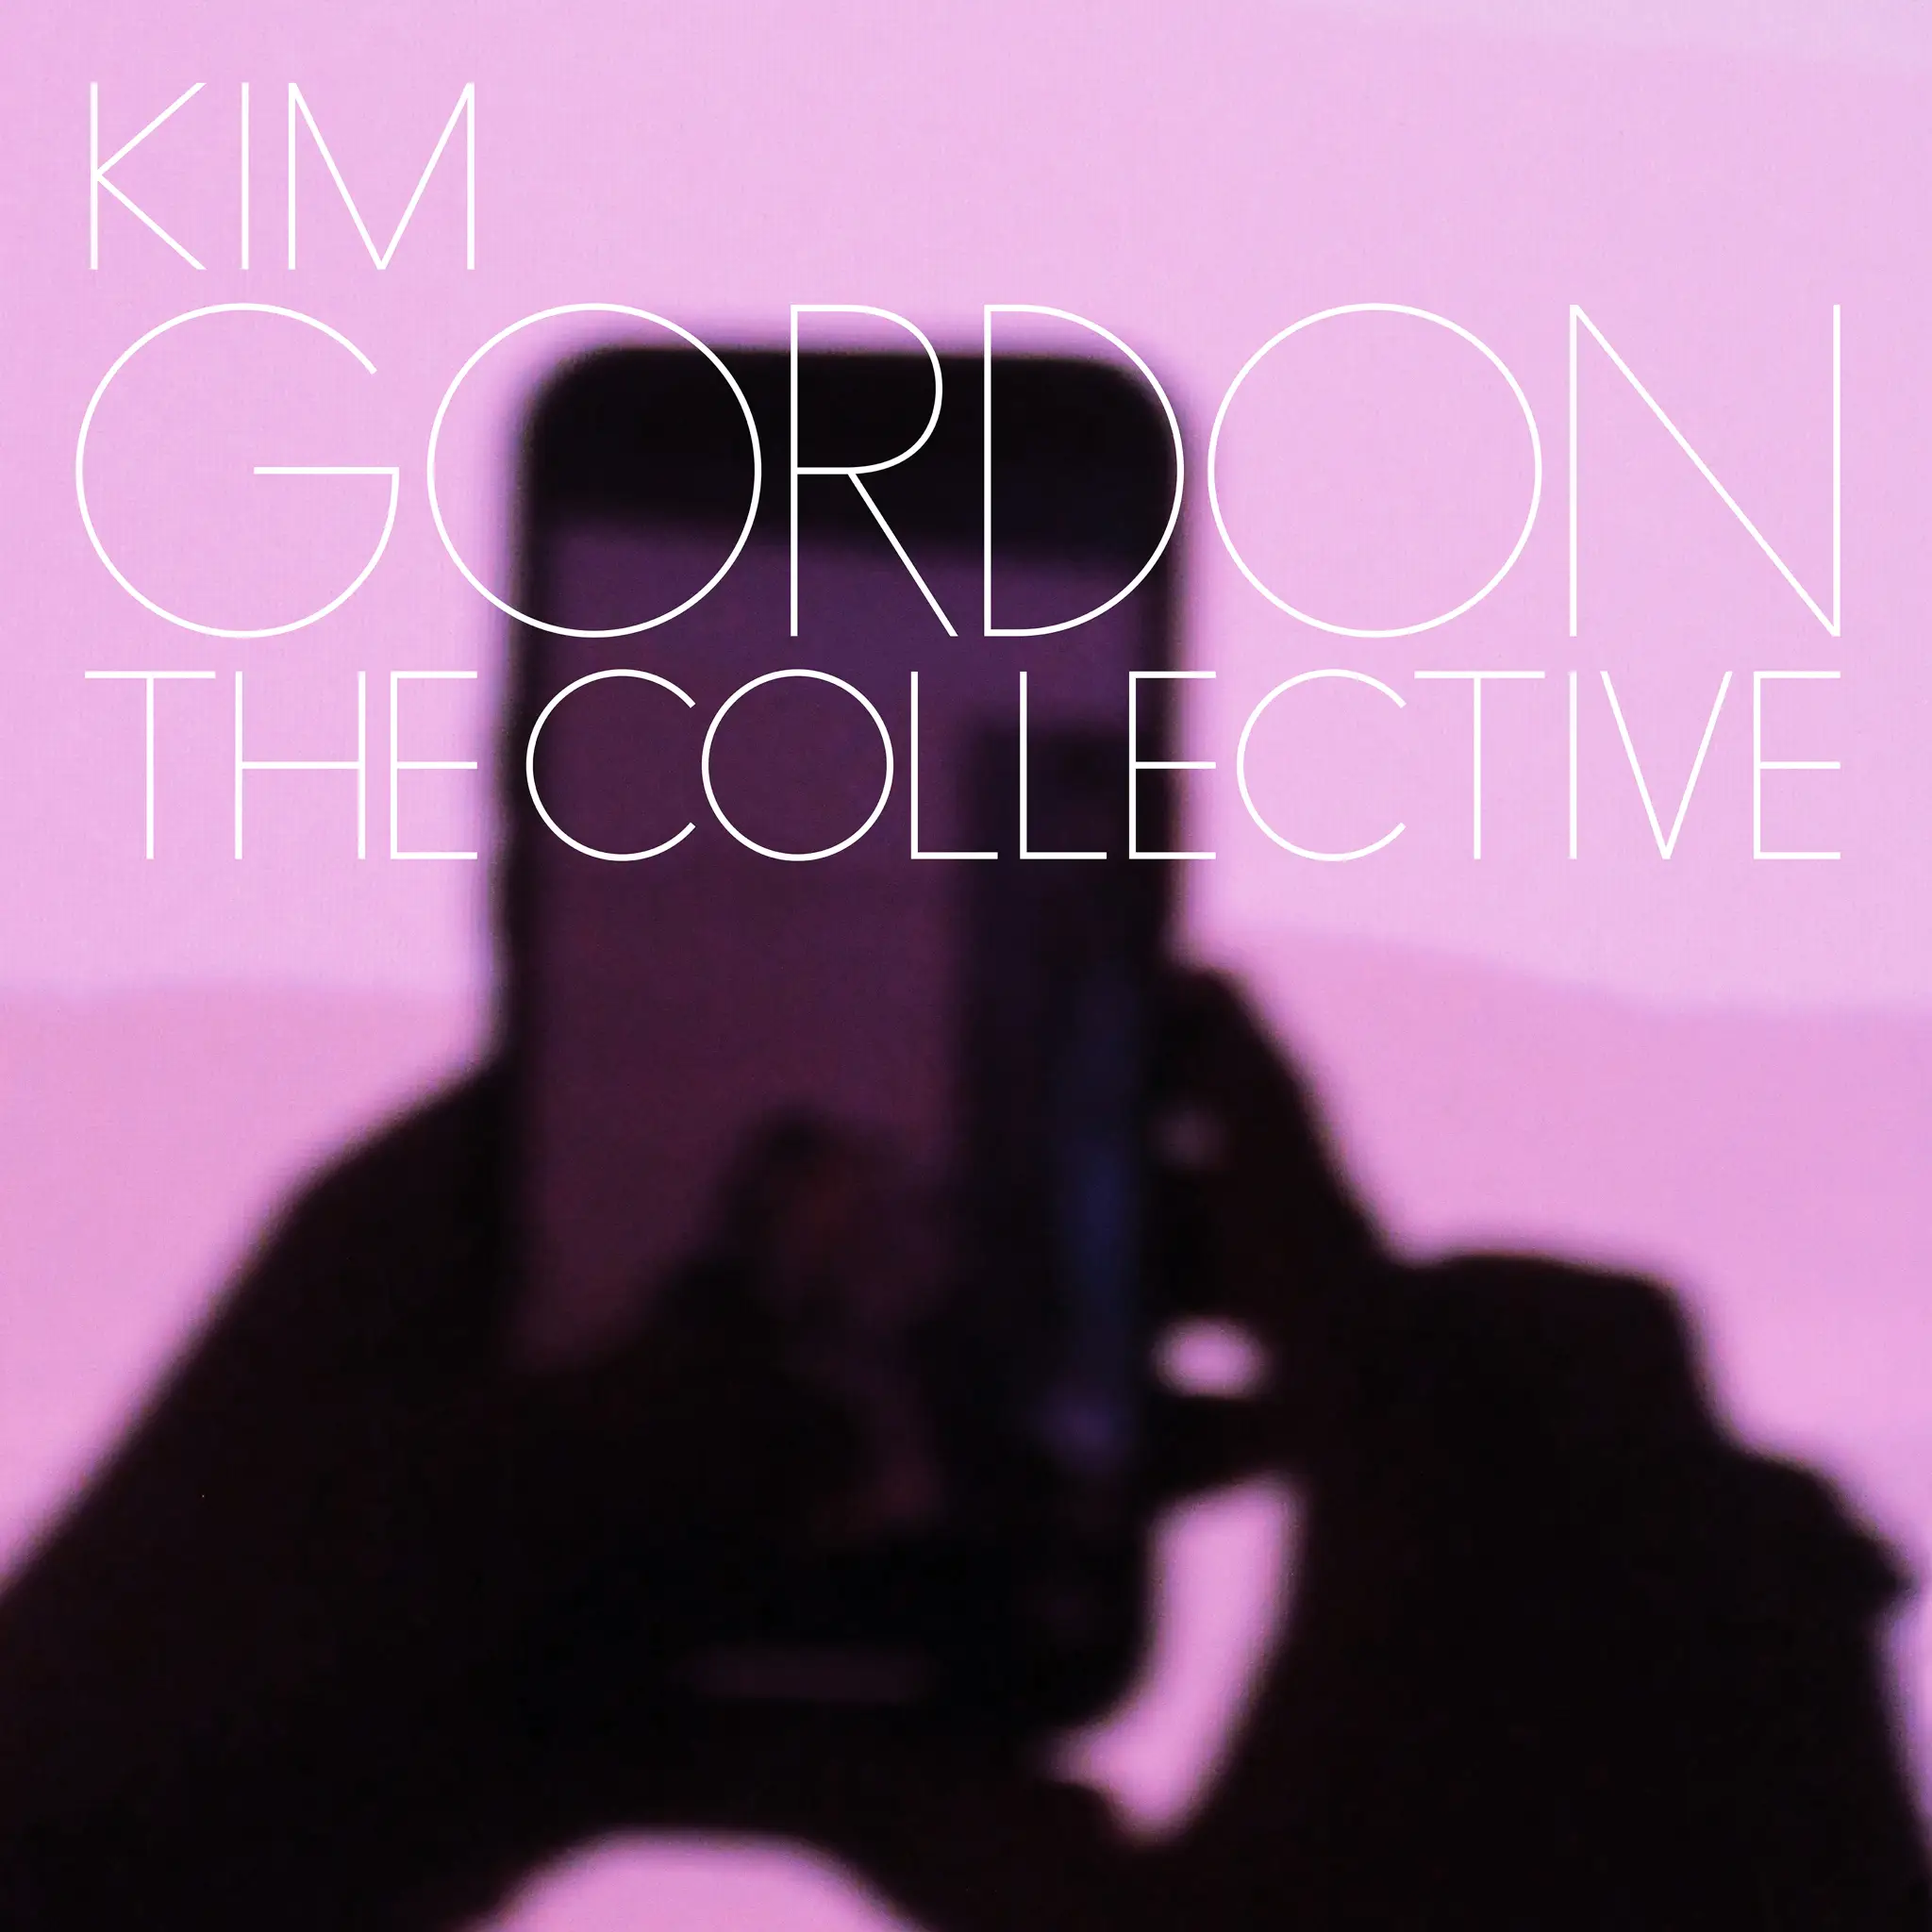 Kim Gordon - The Collective artwork